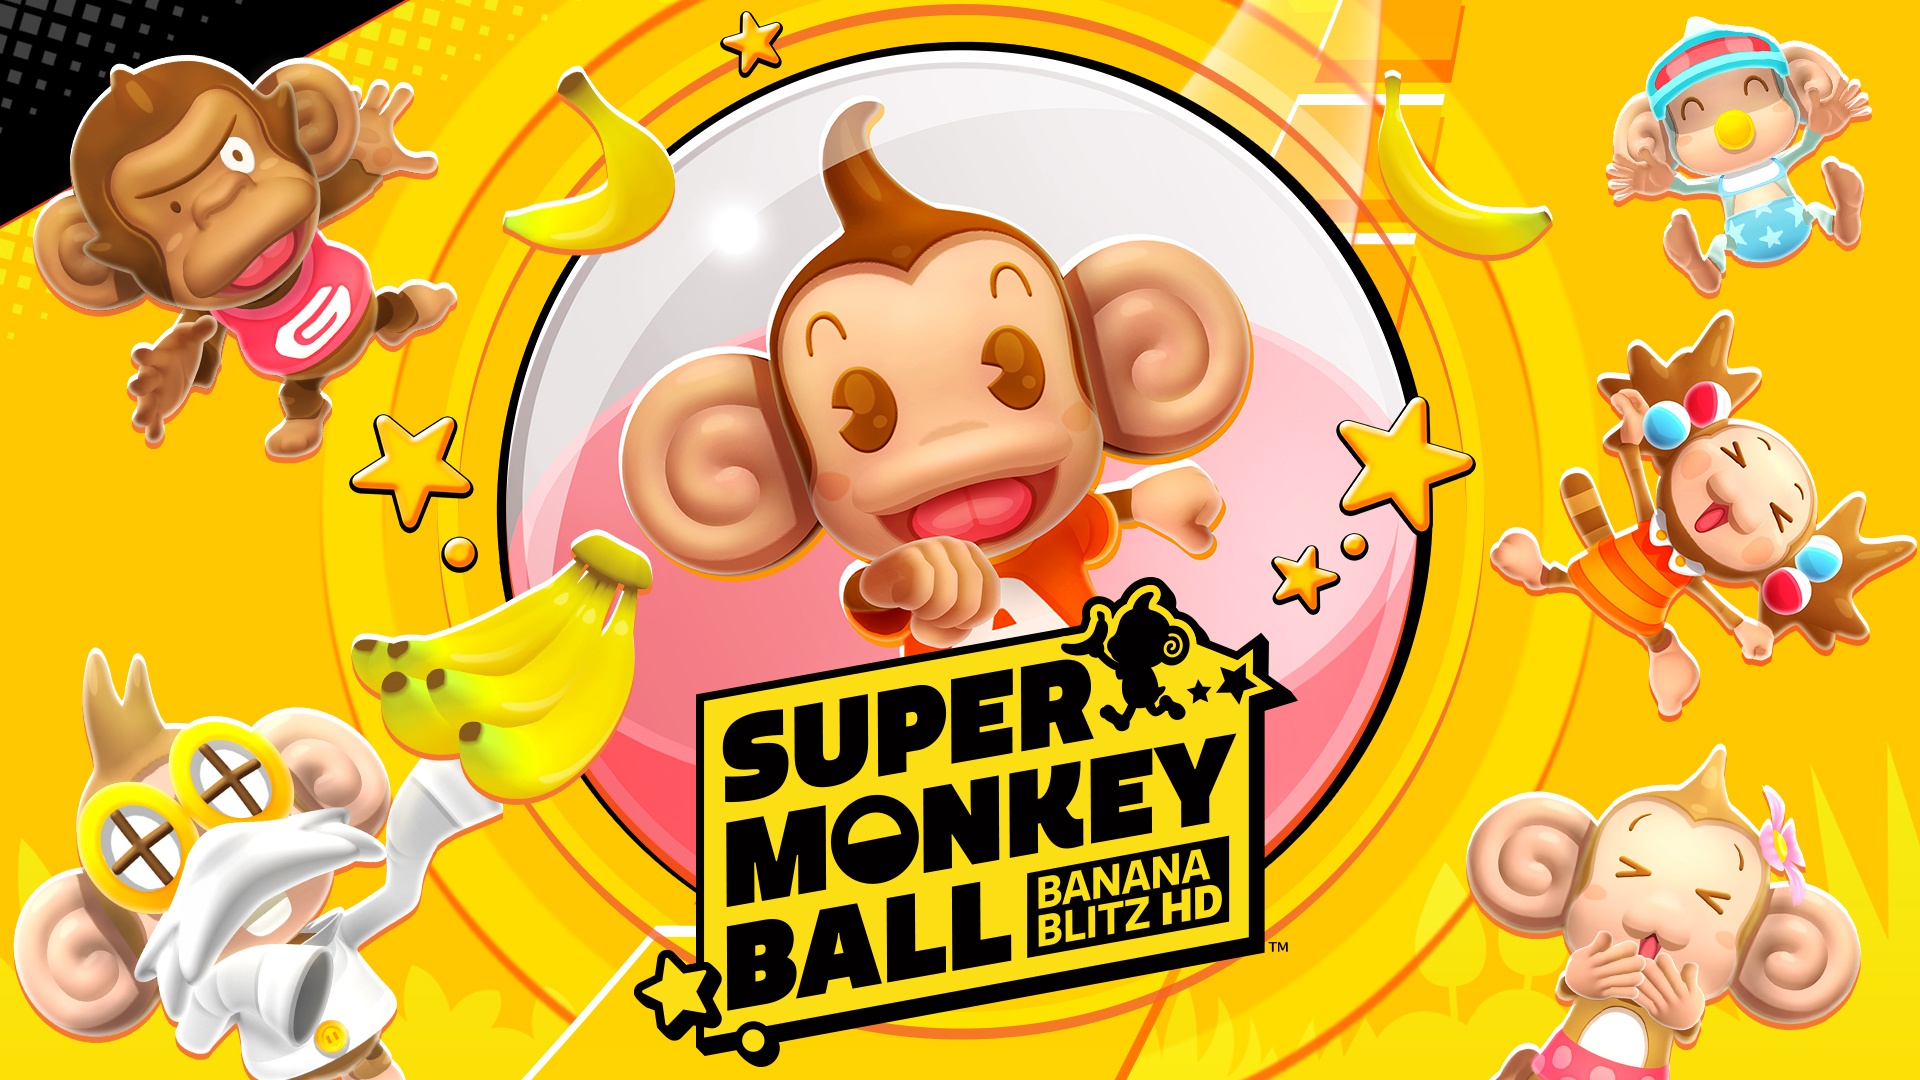 Super monkey ball banana. Super Monkey Ball. Супер манки бол банана. Super macloid Ball Banana Blitz. Super Monkeys игра.